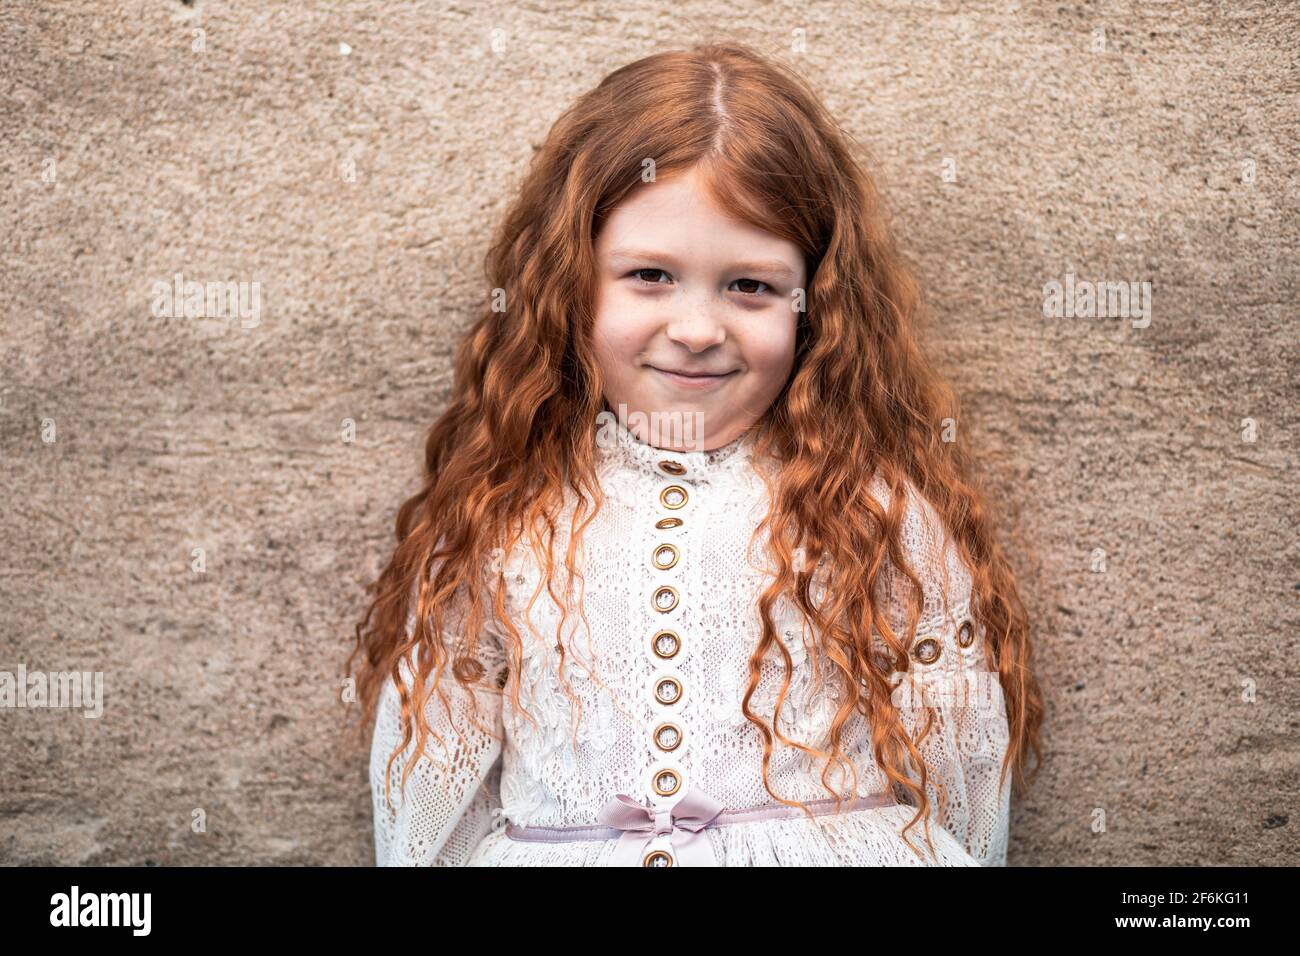 Portrait d'une jolie petite fille au gingembre en robe blanche qui a l'air timide Banque D'Images